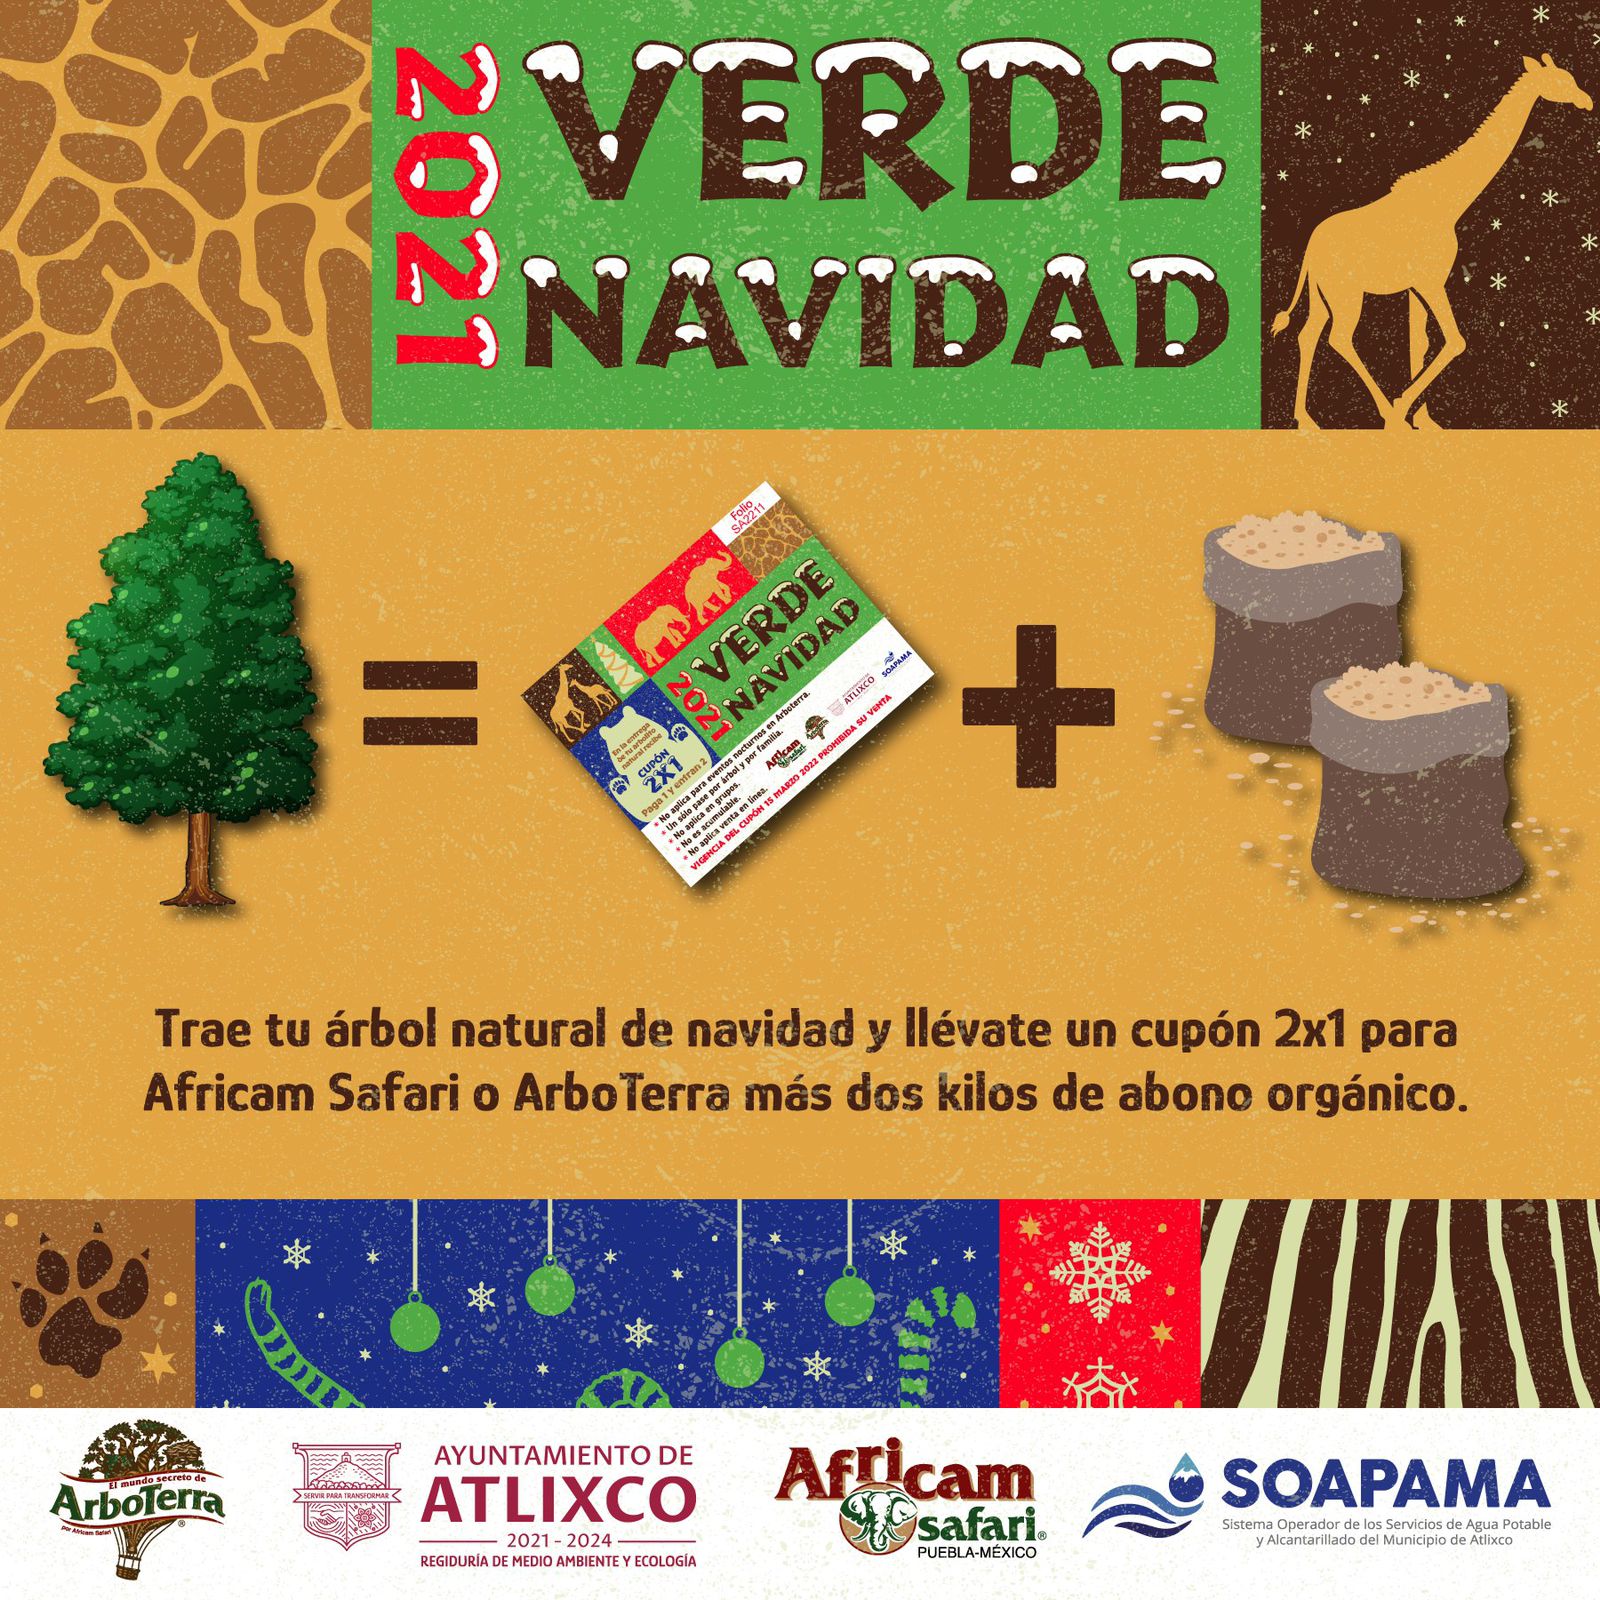 SOAPAMA y Ayuntamiento de Atlixco se unen a la campaña “Verde Navidad 2021” de Africam Safari.